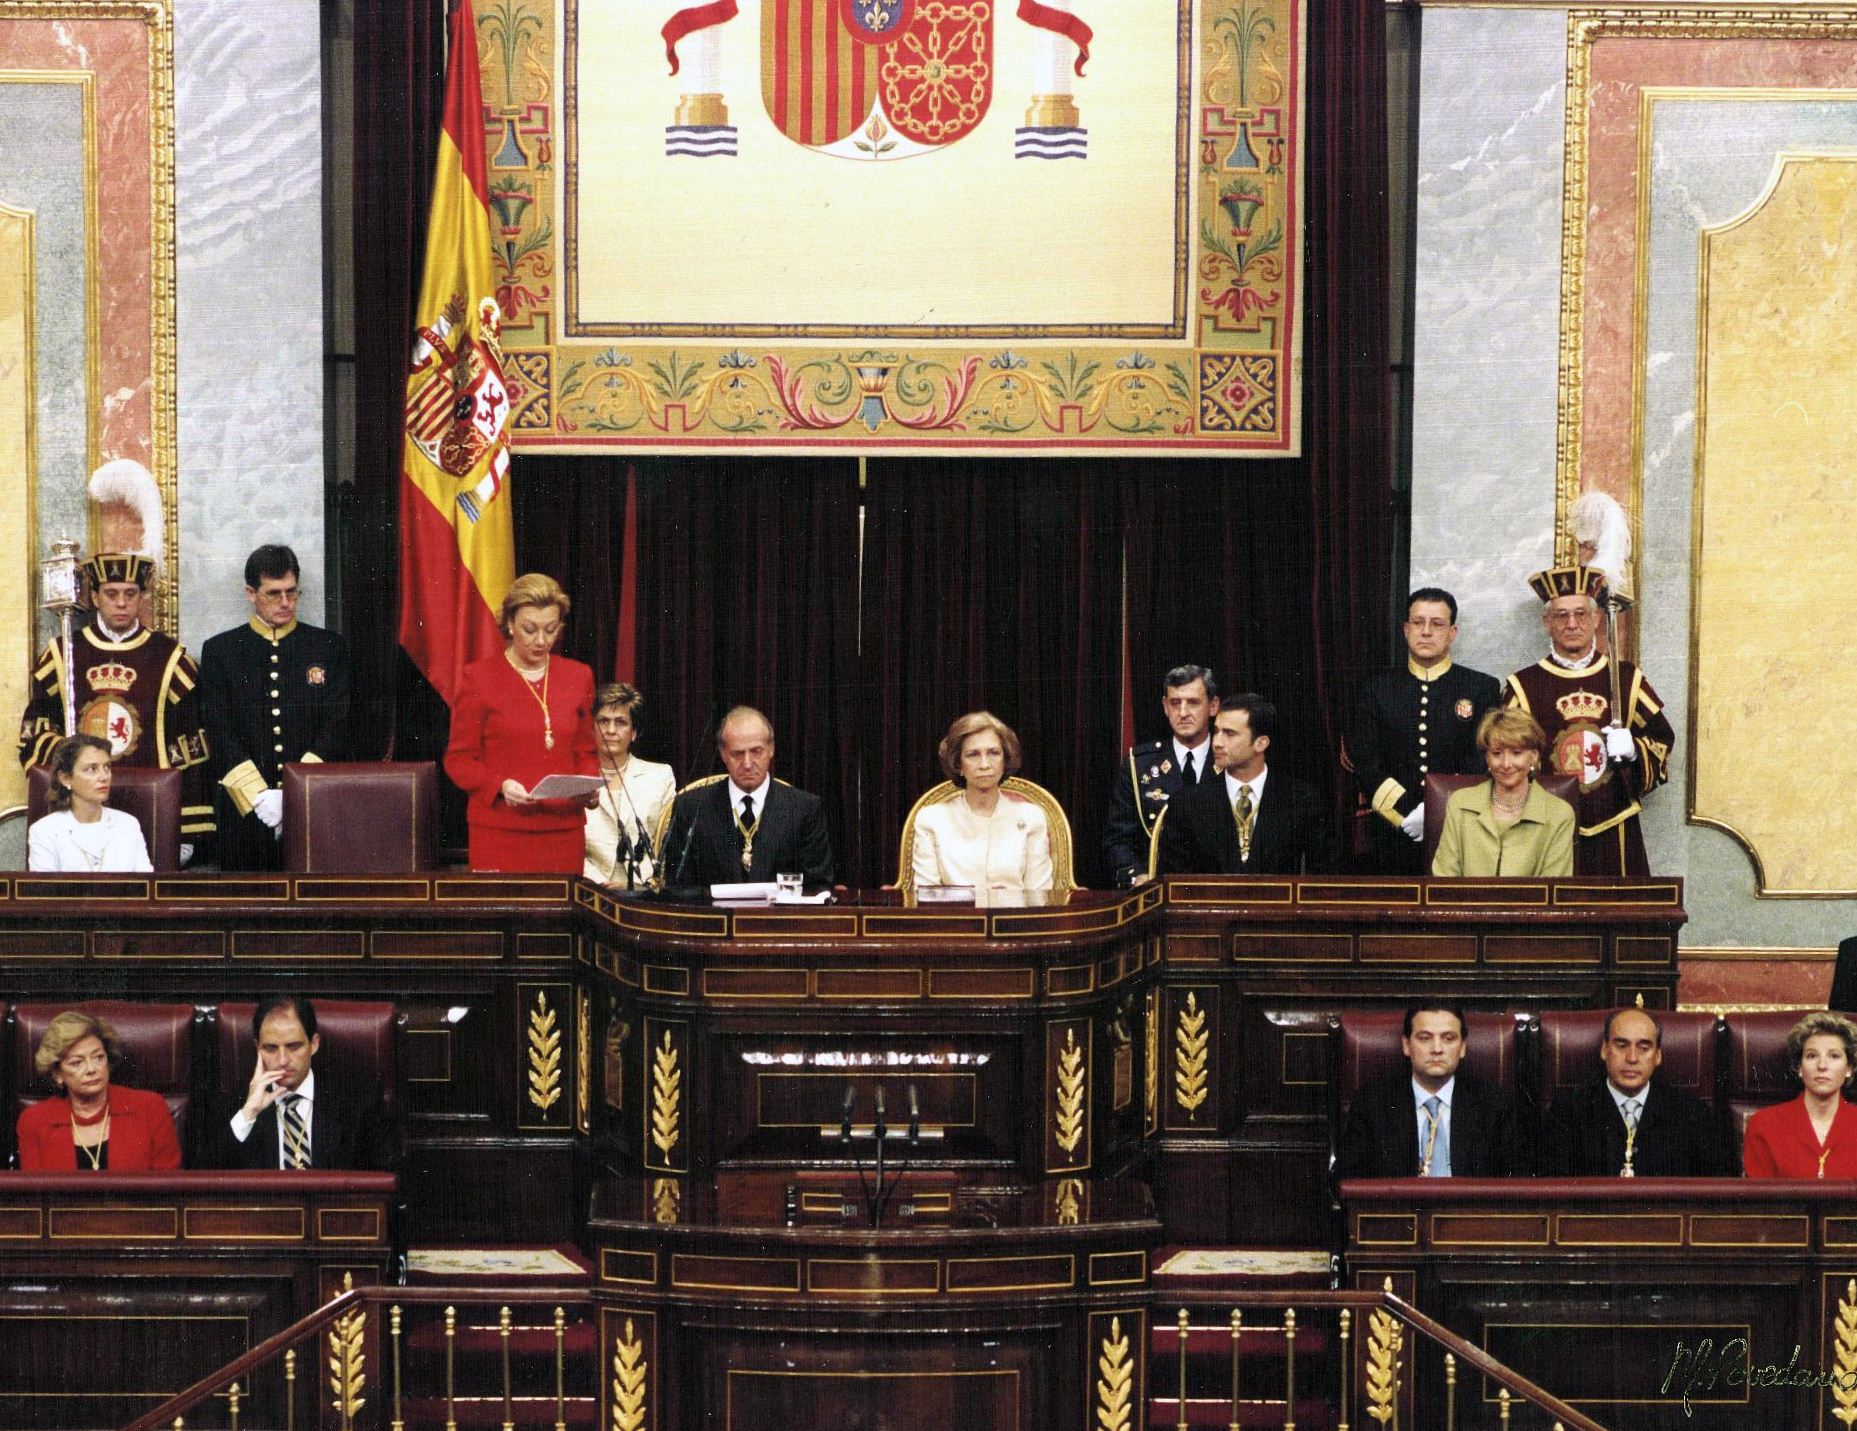 Discurso de la Presidenta del Congreso de los Diputados, Dª. Luisa Fernanda Rudi, SS.MM los Reyes, el Príncipe D. Felipe y la Presidenta del Senado, Dª. Esperanza Aguirre